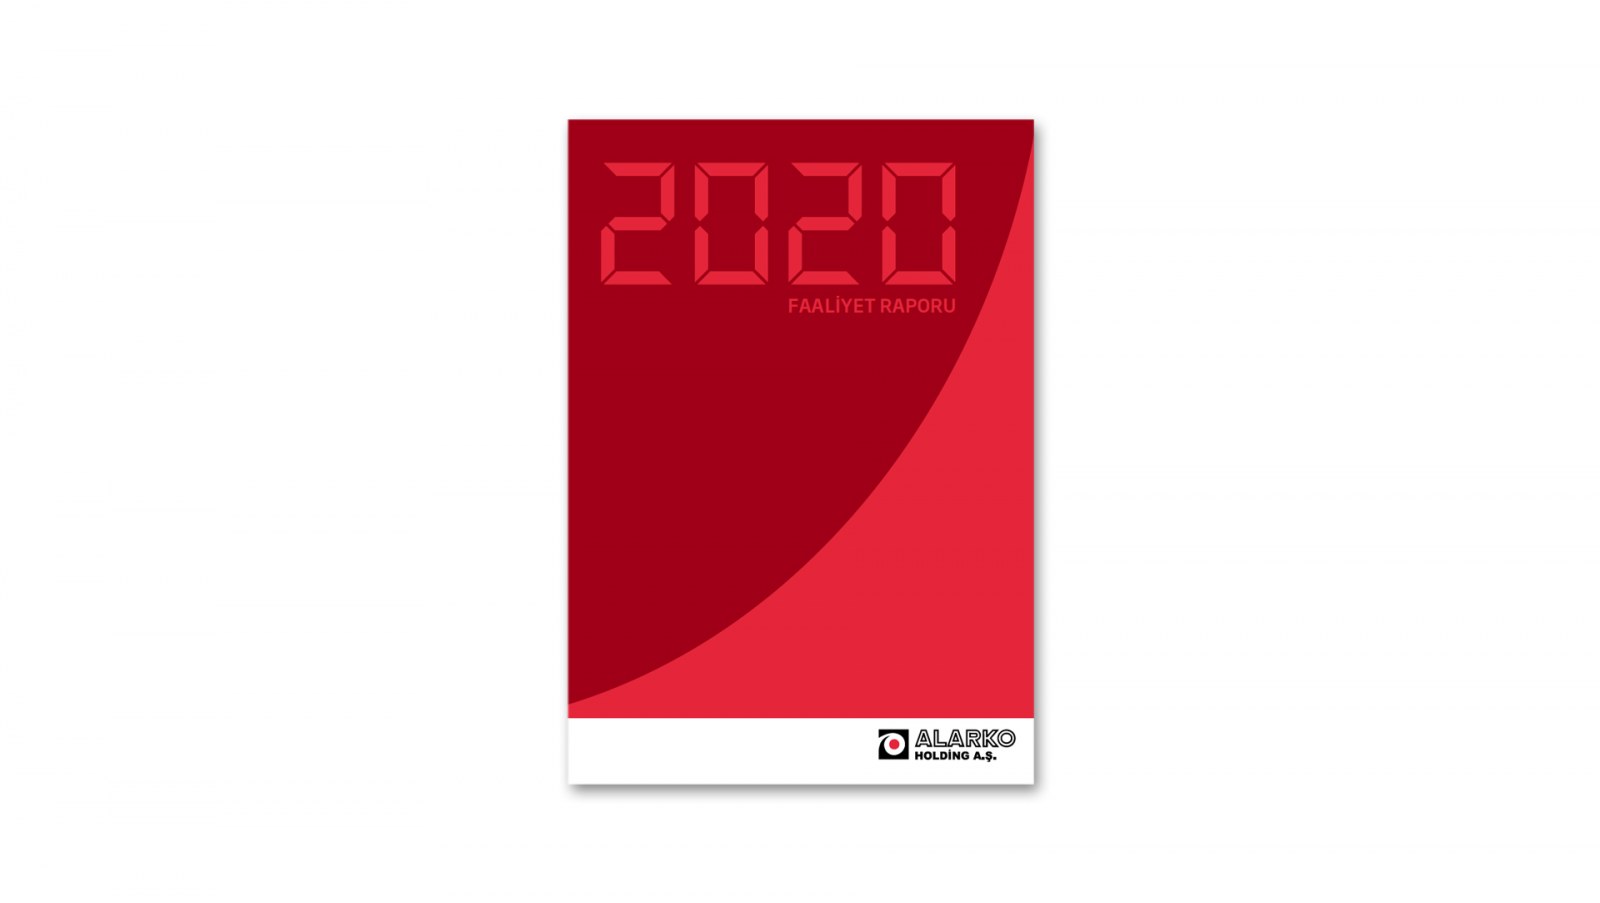 ALARKO HOLDİNG / 2020 Faaliyet Raporu / 2020 Annual Report